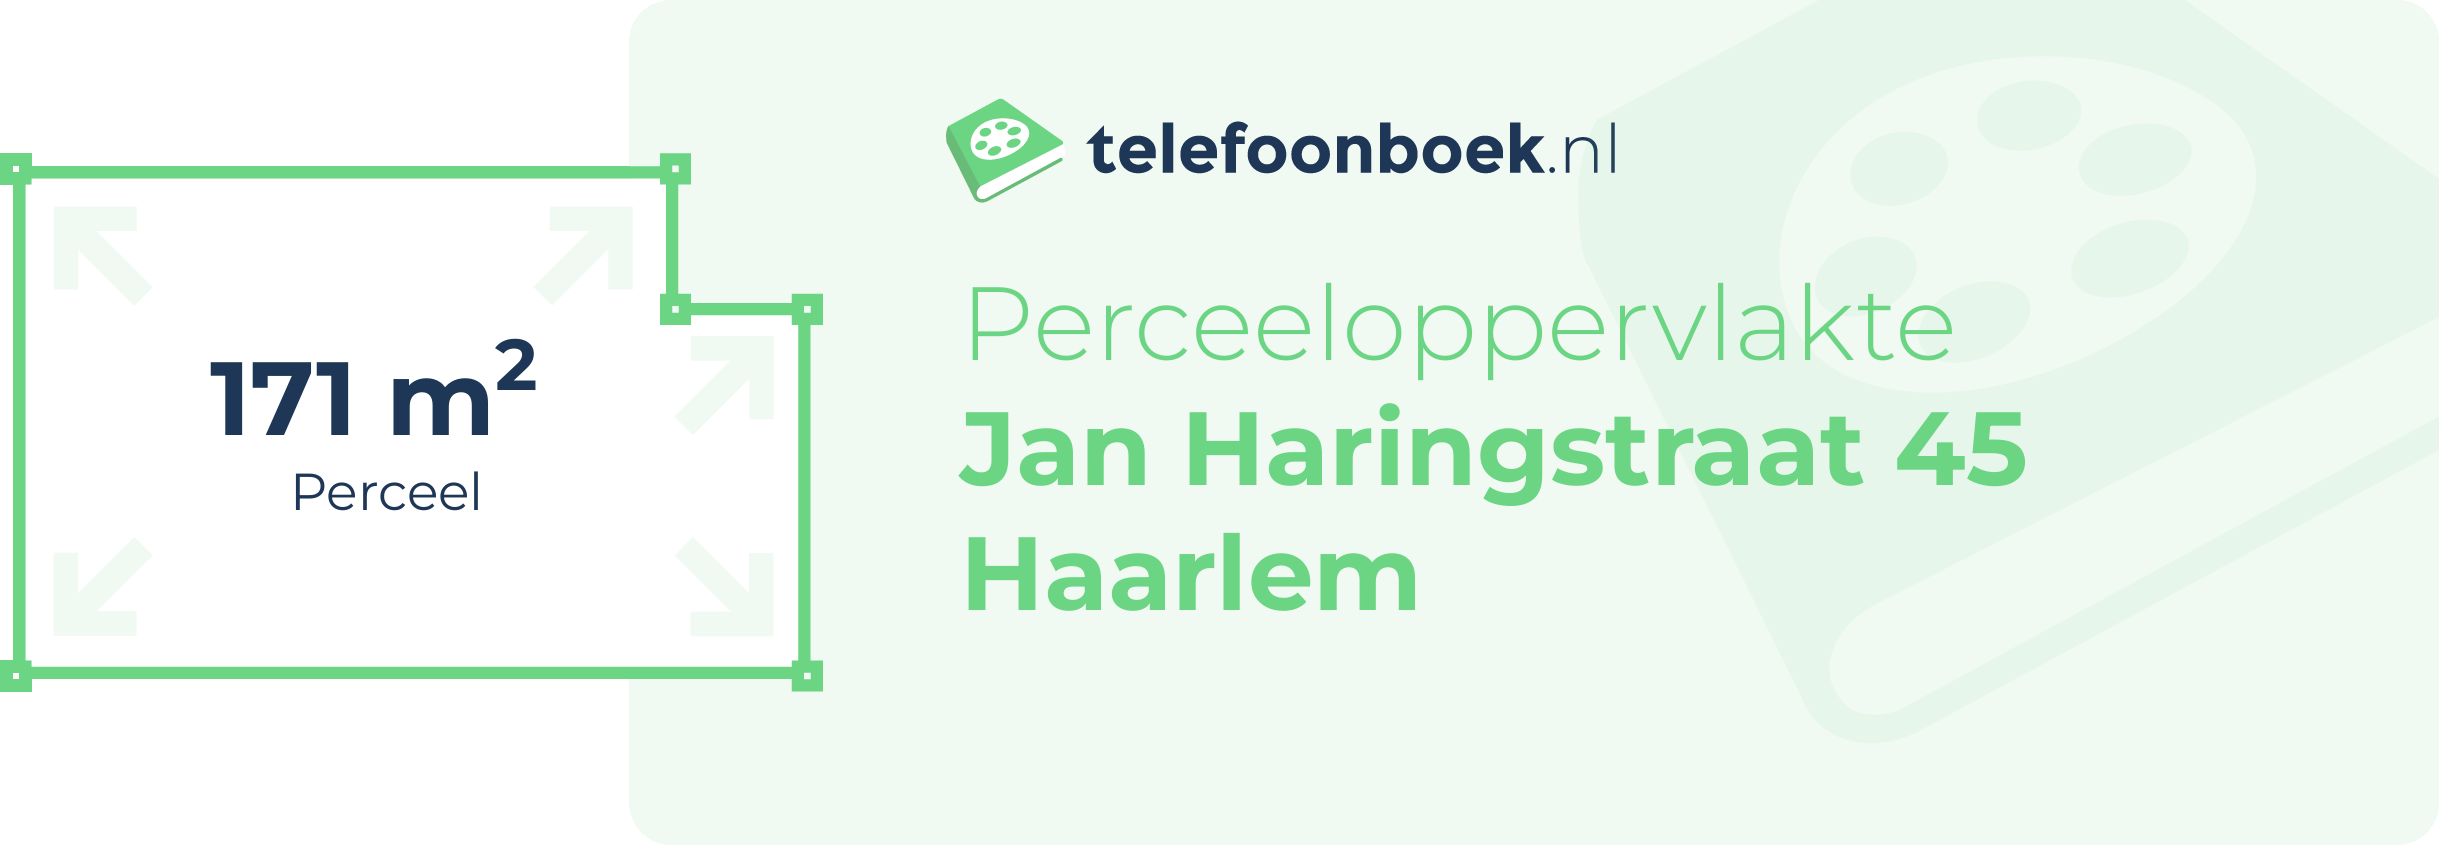 Perceeloppervlakte Jan Haringstraat 45 Haarlem